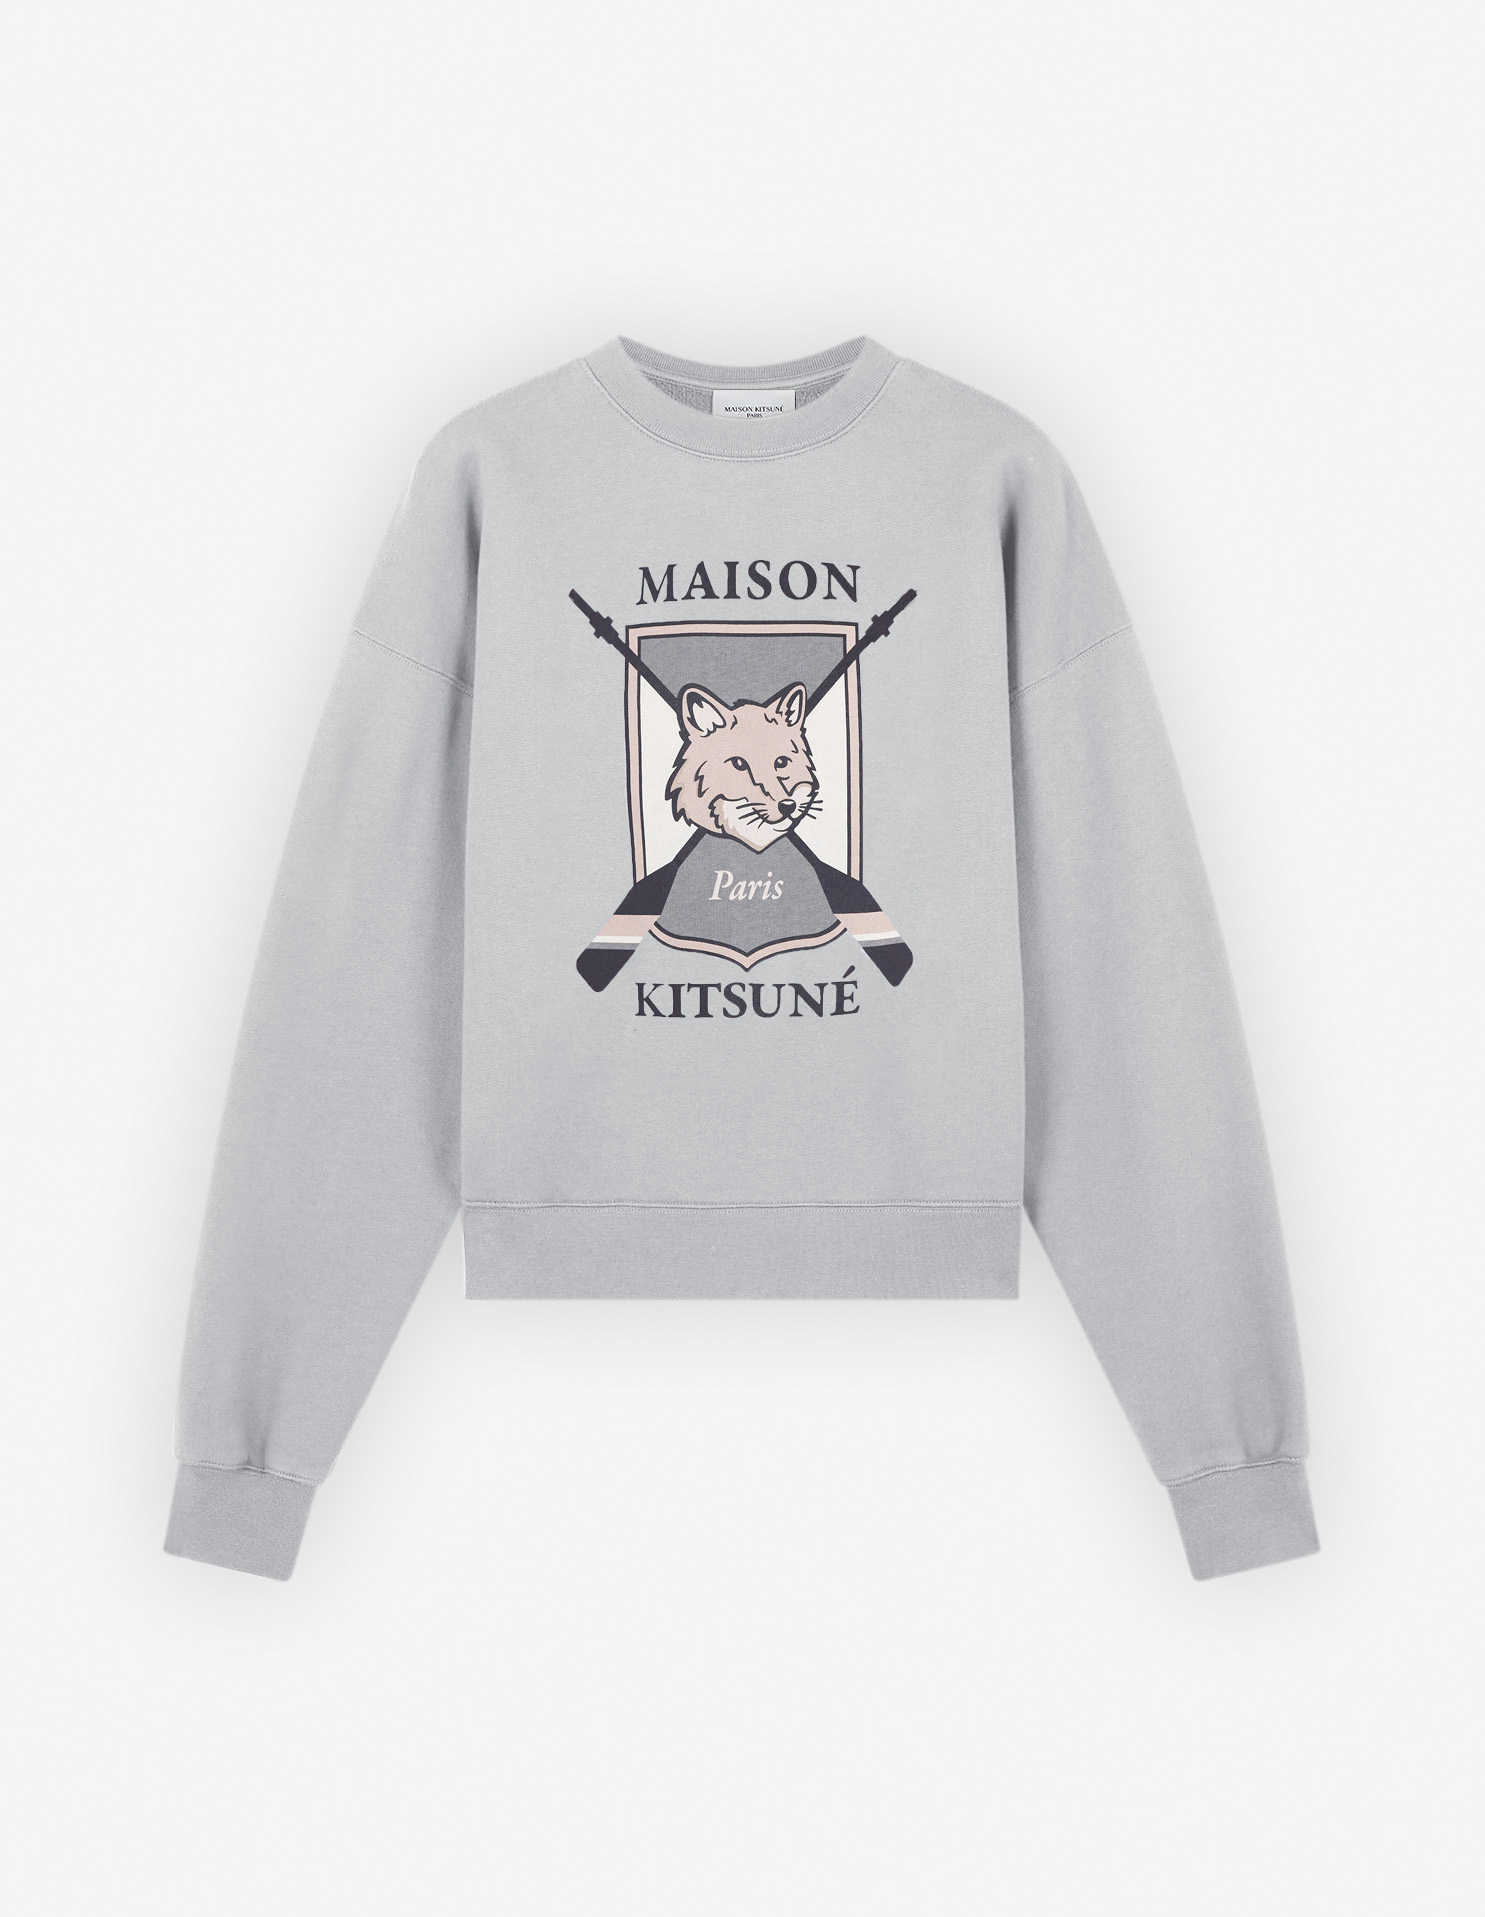 Maison kitsune スウェットシャツ  メゾンキツネ